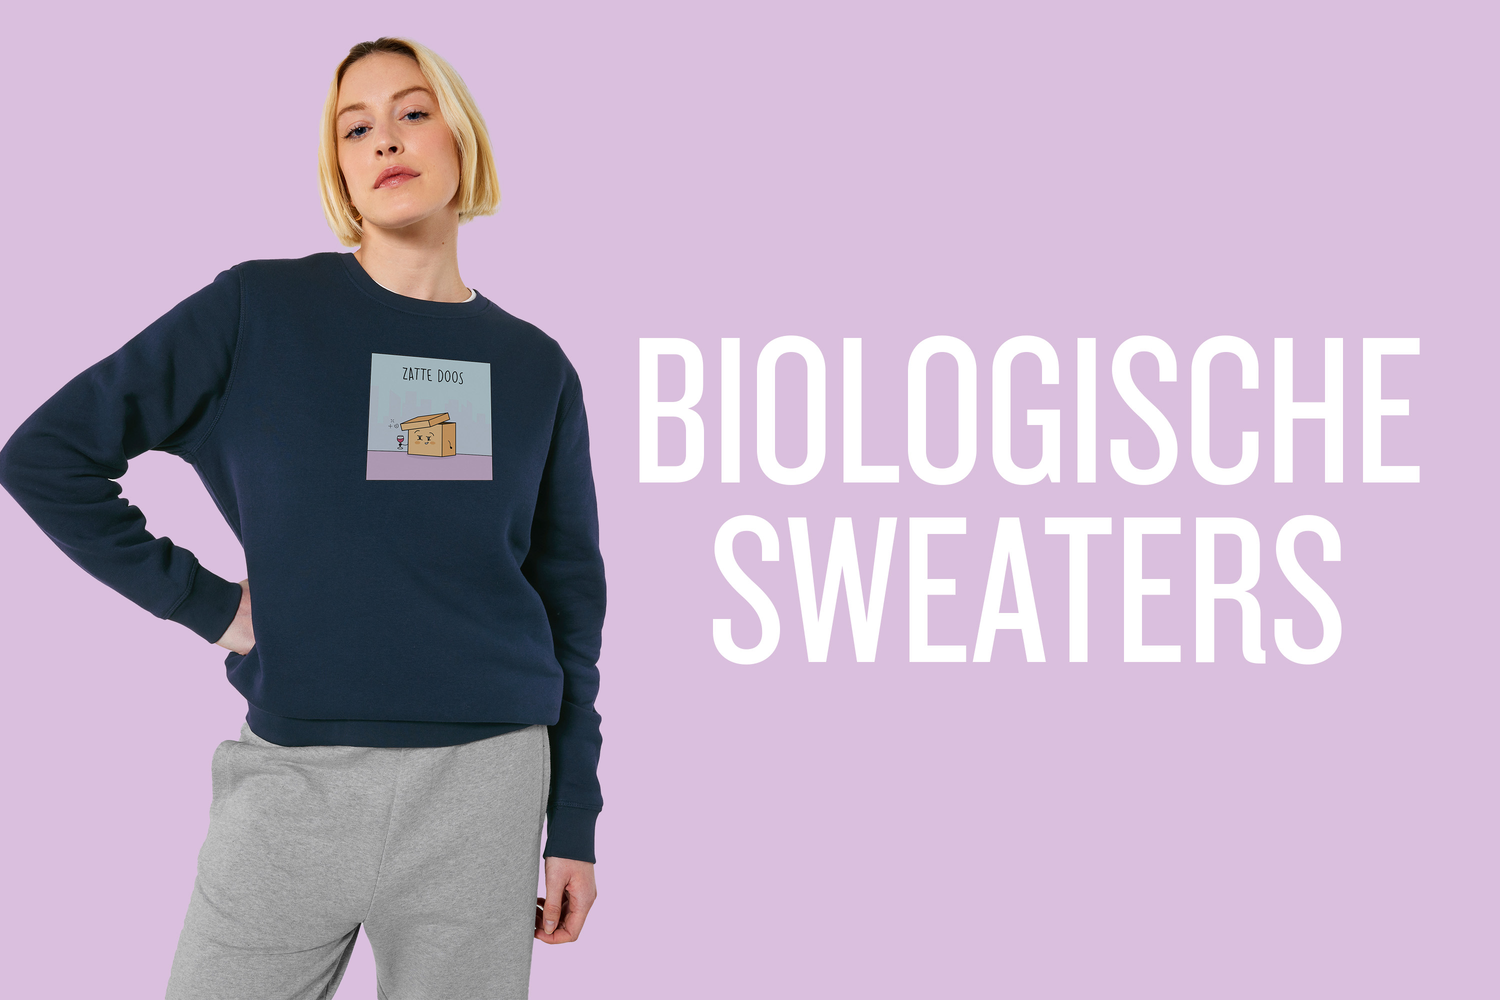 Biologische Sweaters